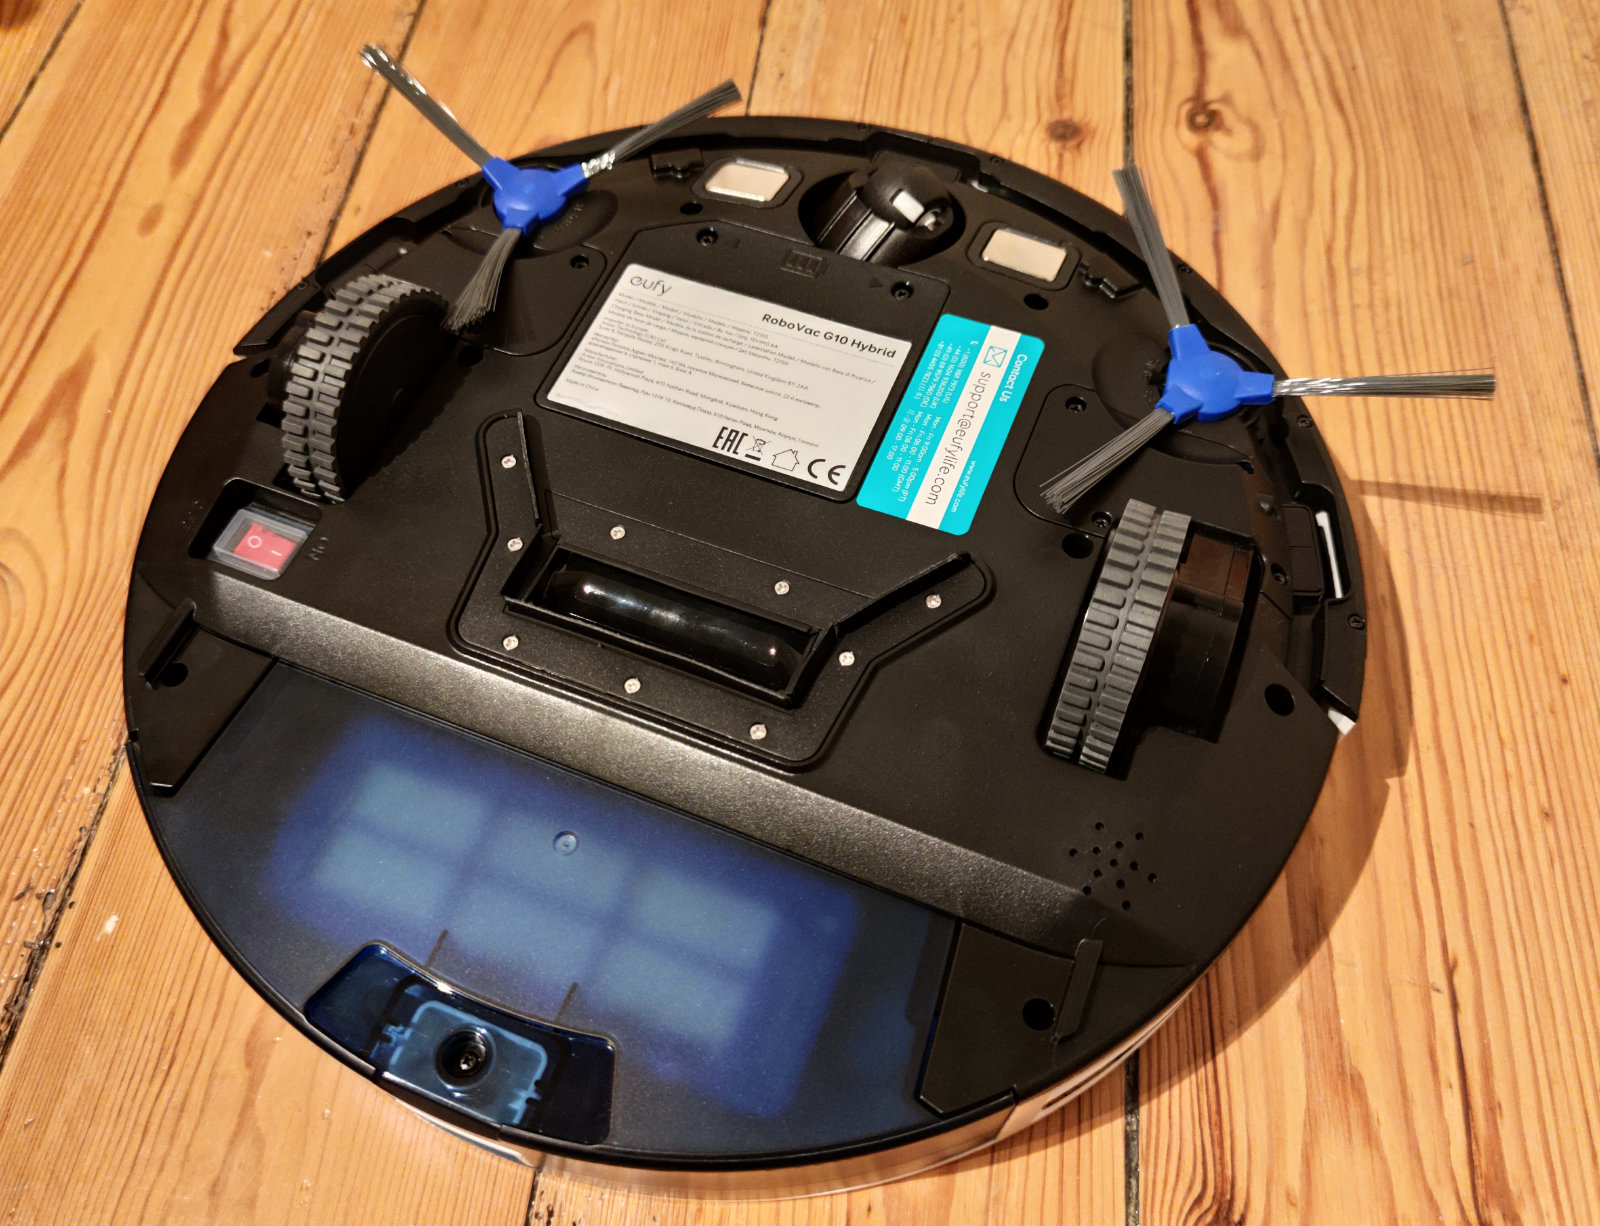 Eufy RoboVac G10 Hybrid im Test Neuer Saugroboter mit Wisch Funktion 